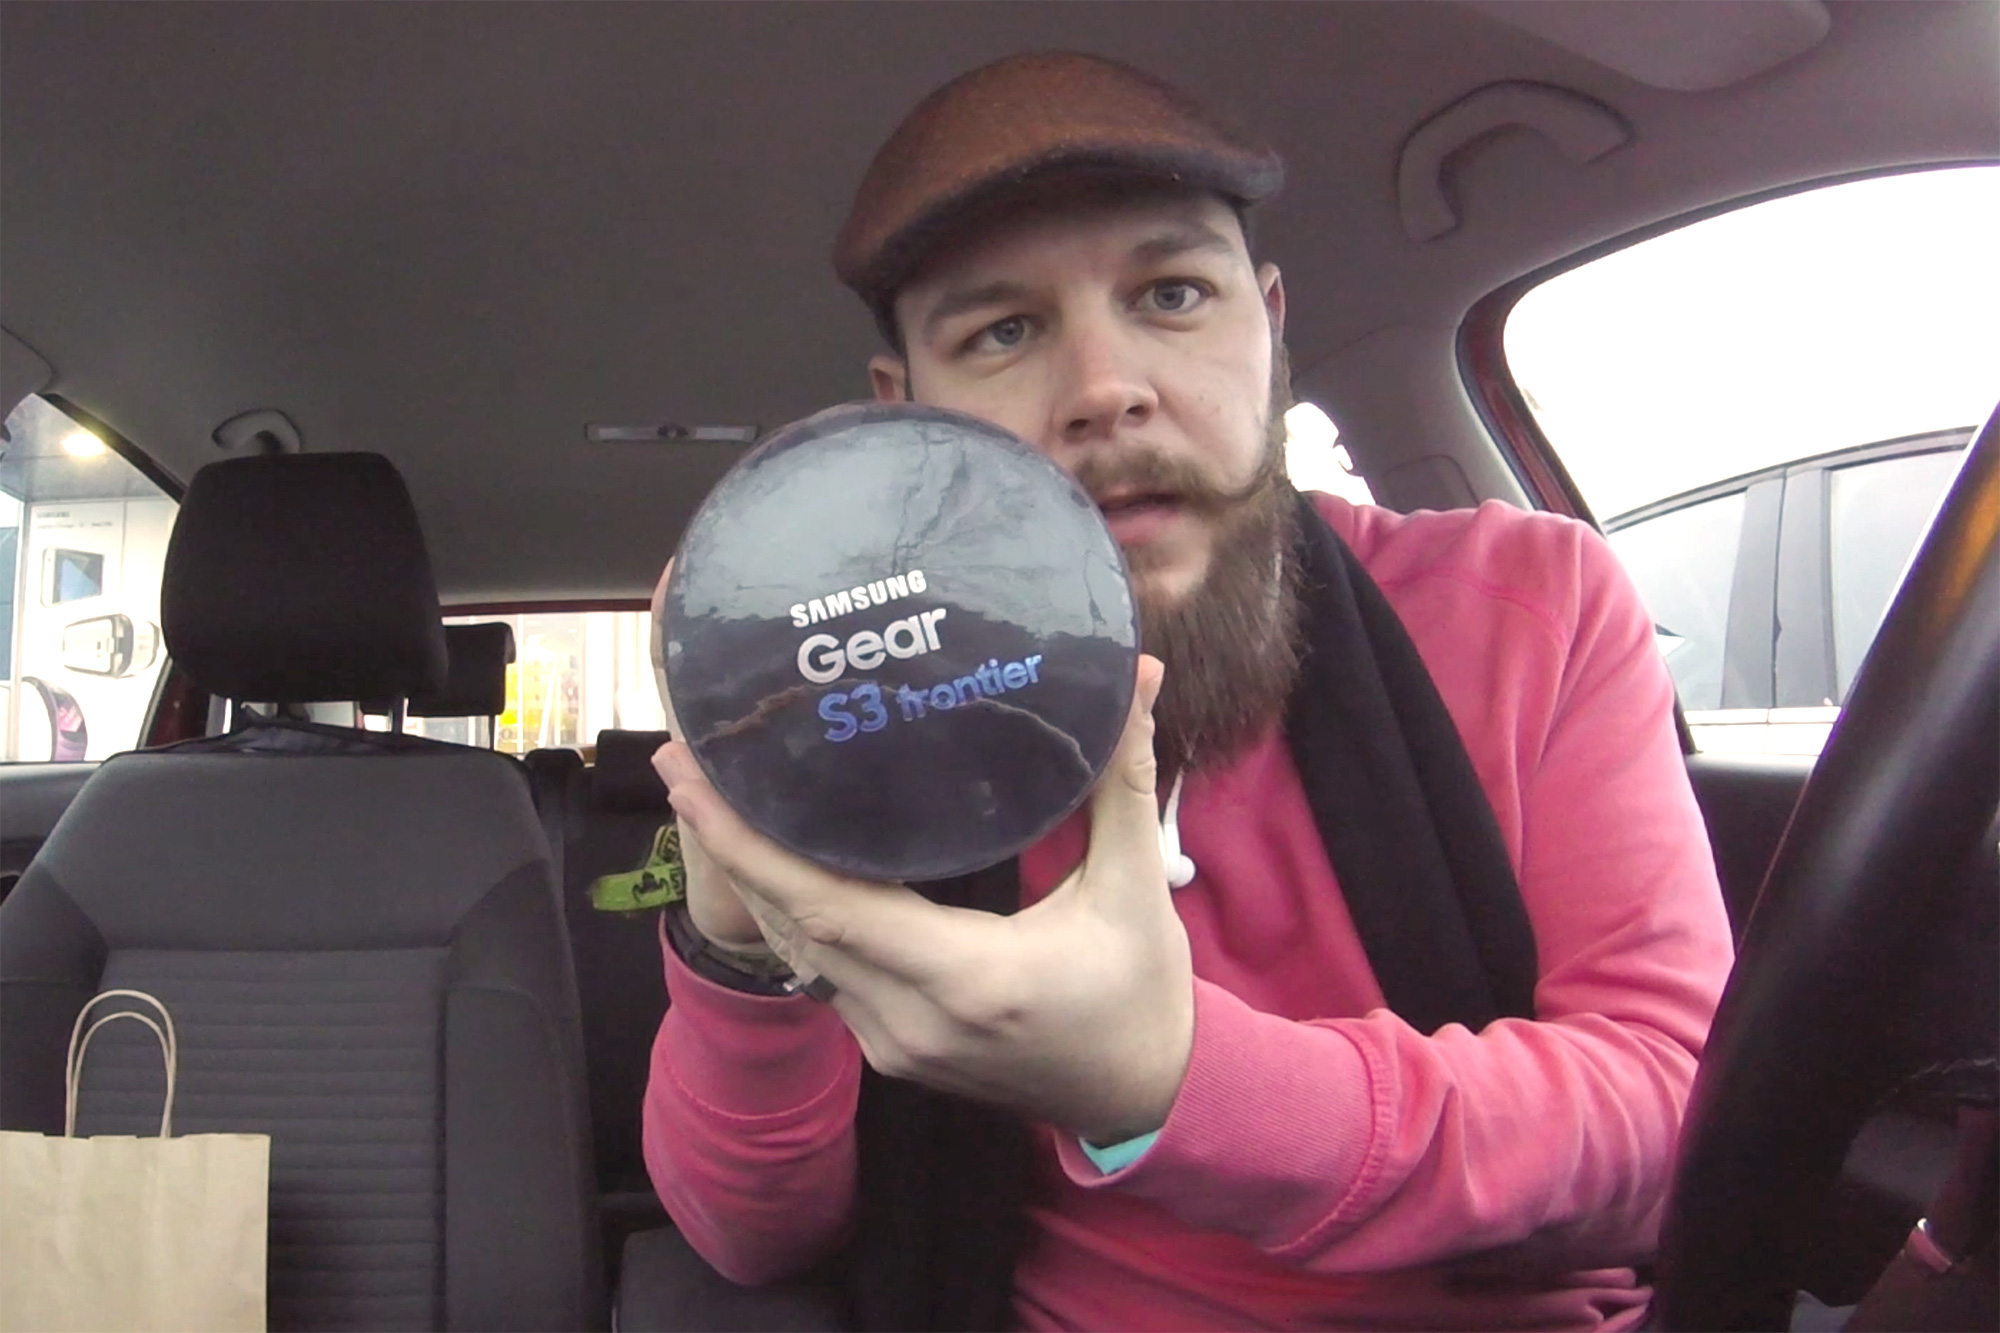 Vlog #003: Preklinjanje, Honor 8, tek in Samsung Gear S3 unboxing